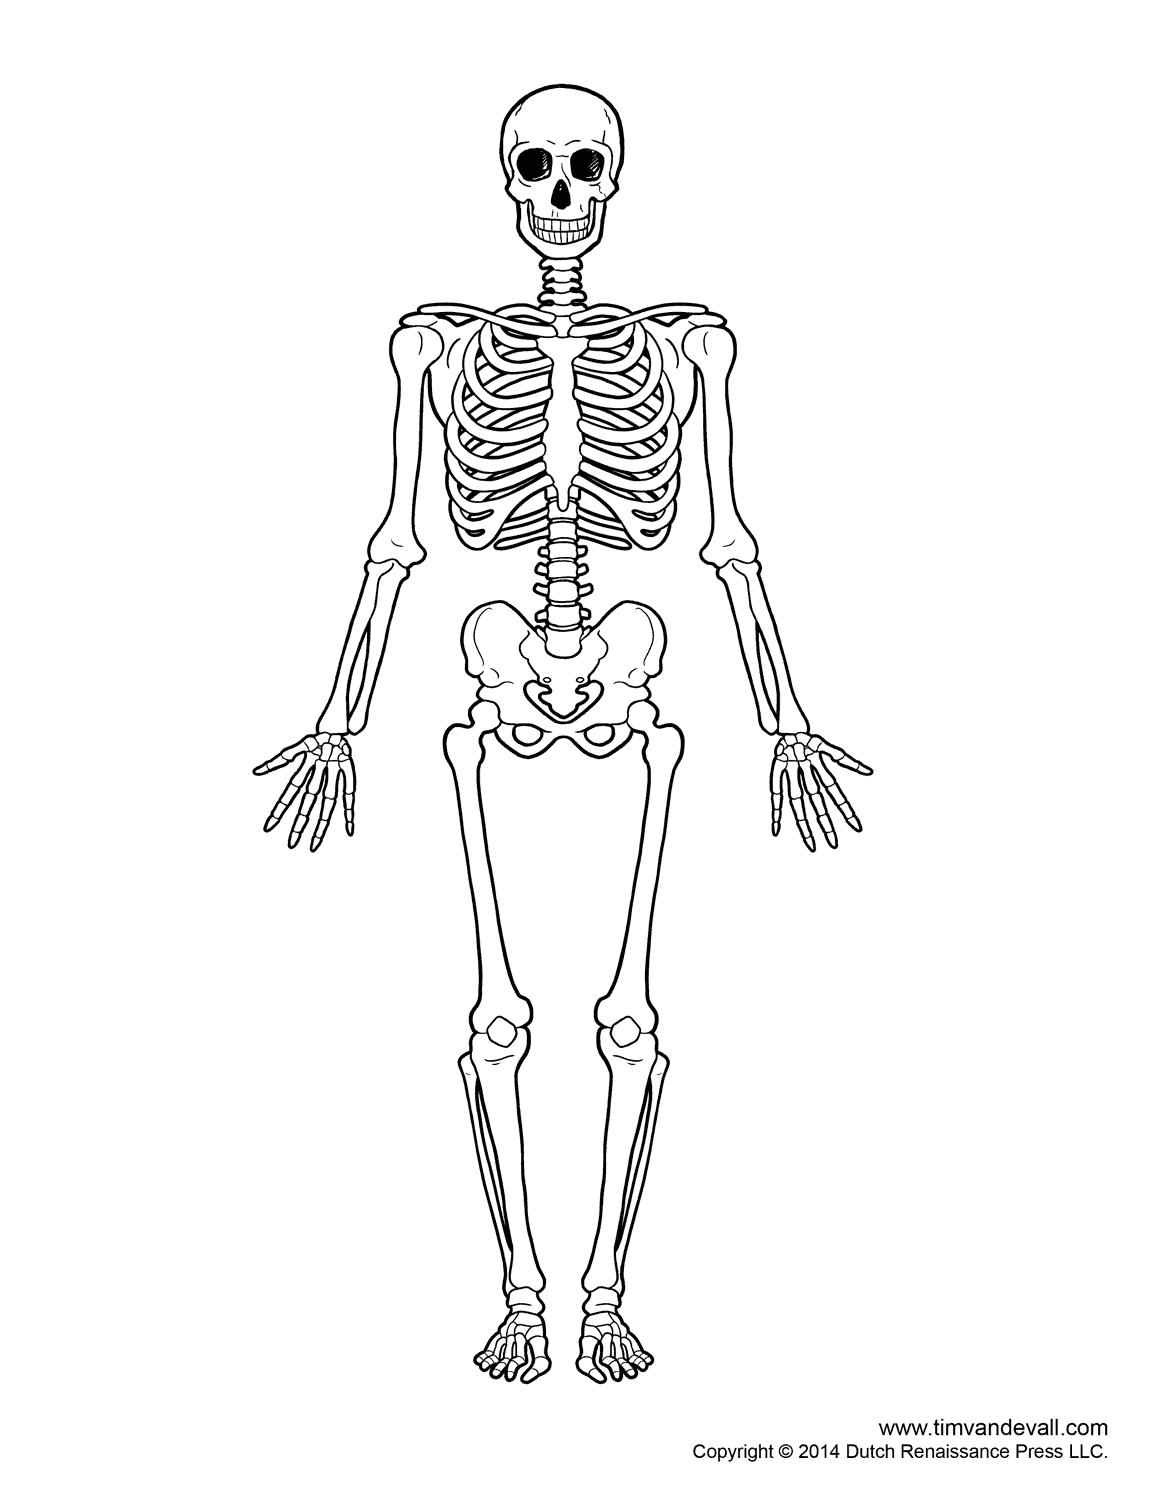 diagram-of-human-skeleton.png